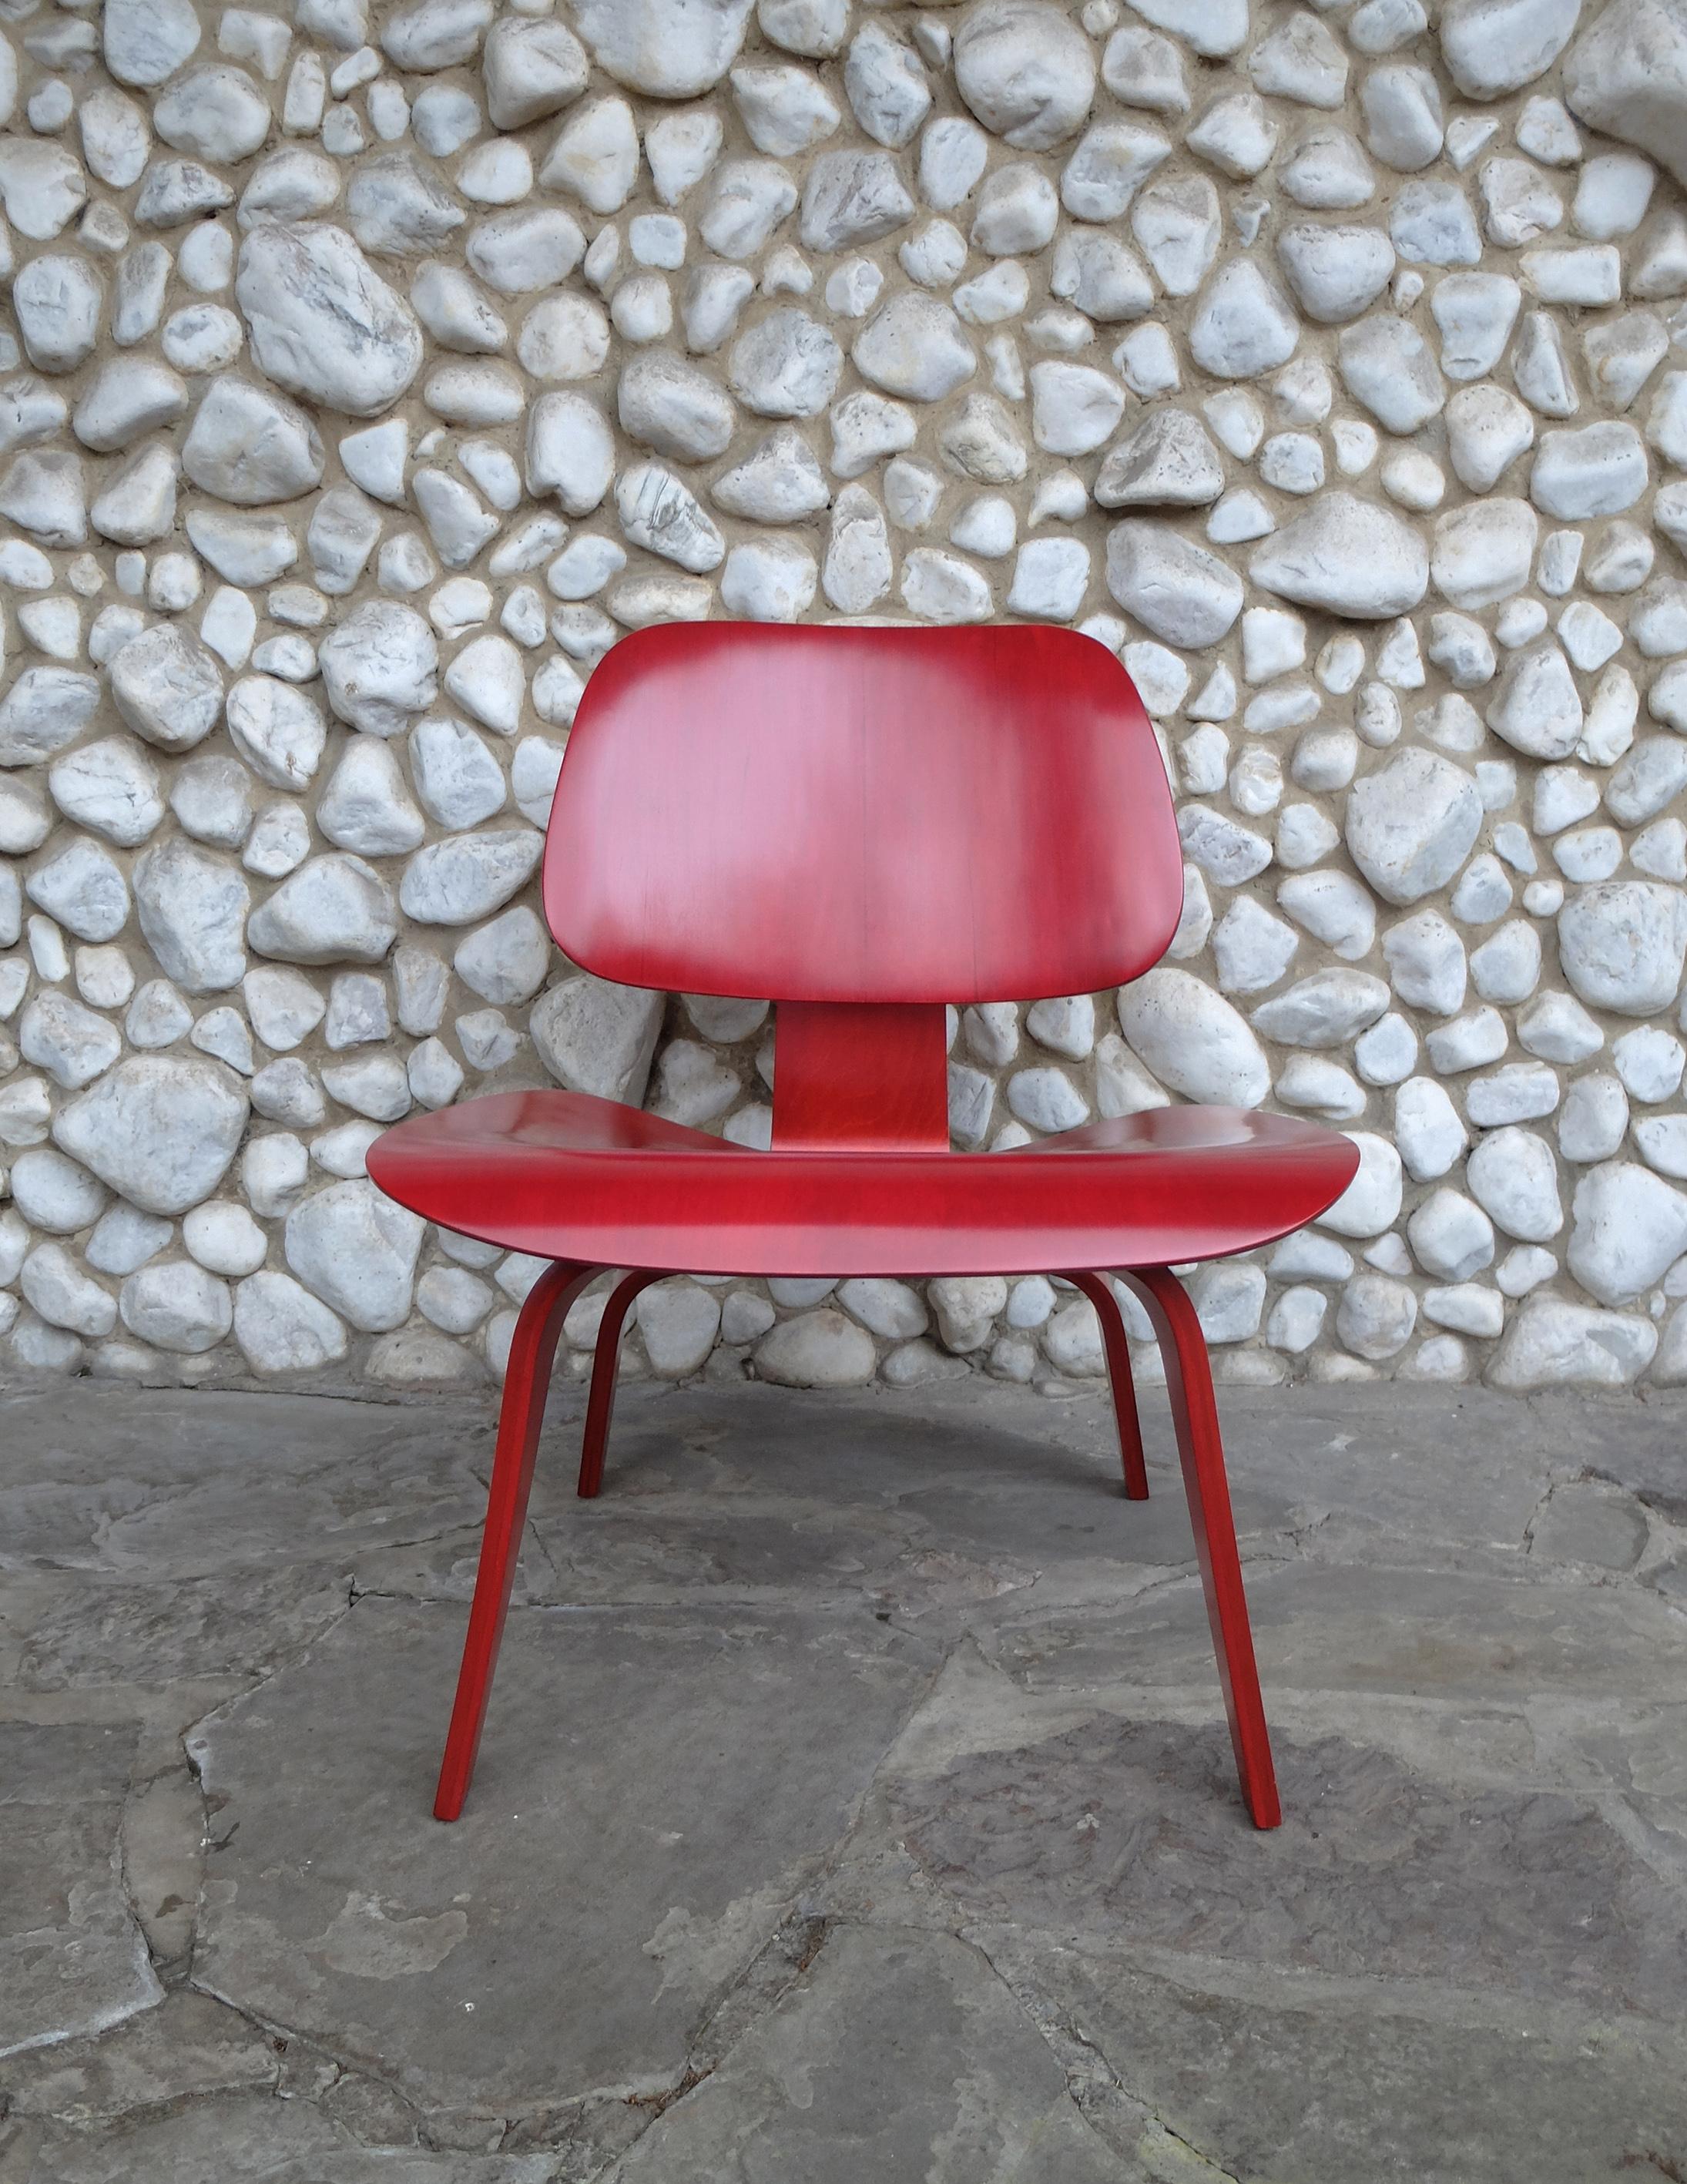 LCW-Stuhl (Lounge Chair Wood), entworfen von Charles und Ray Eames um 1945.

Der Stuhl wurde von Herman Miller verkauft, aber von Evans Plywood in den Jahren 1948-1949 hergestellt. Die untenstehende 5-2-5-Schraubenanordnung wird nur von Evans